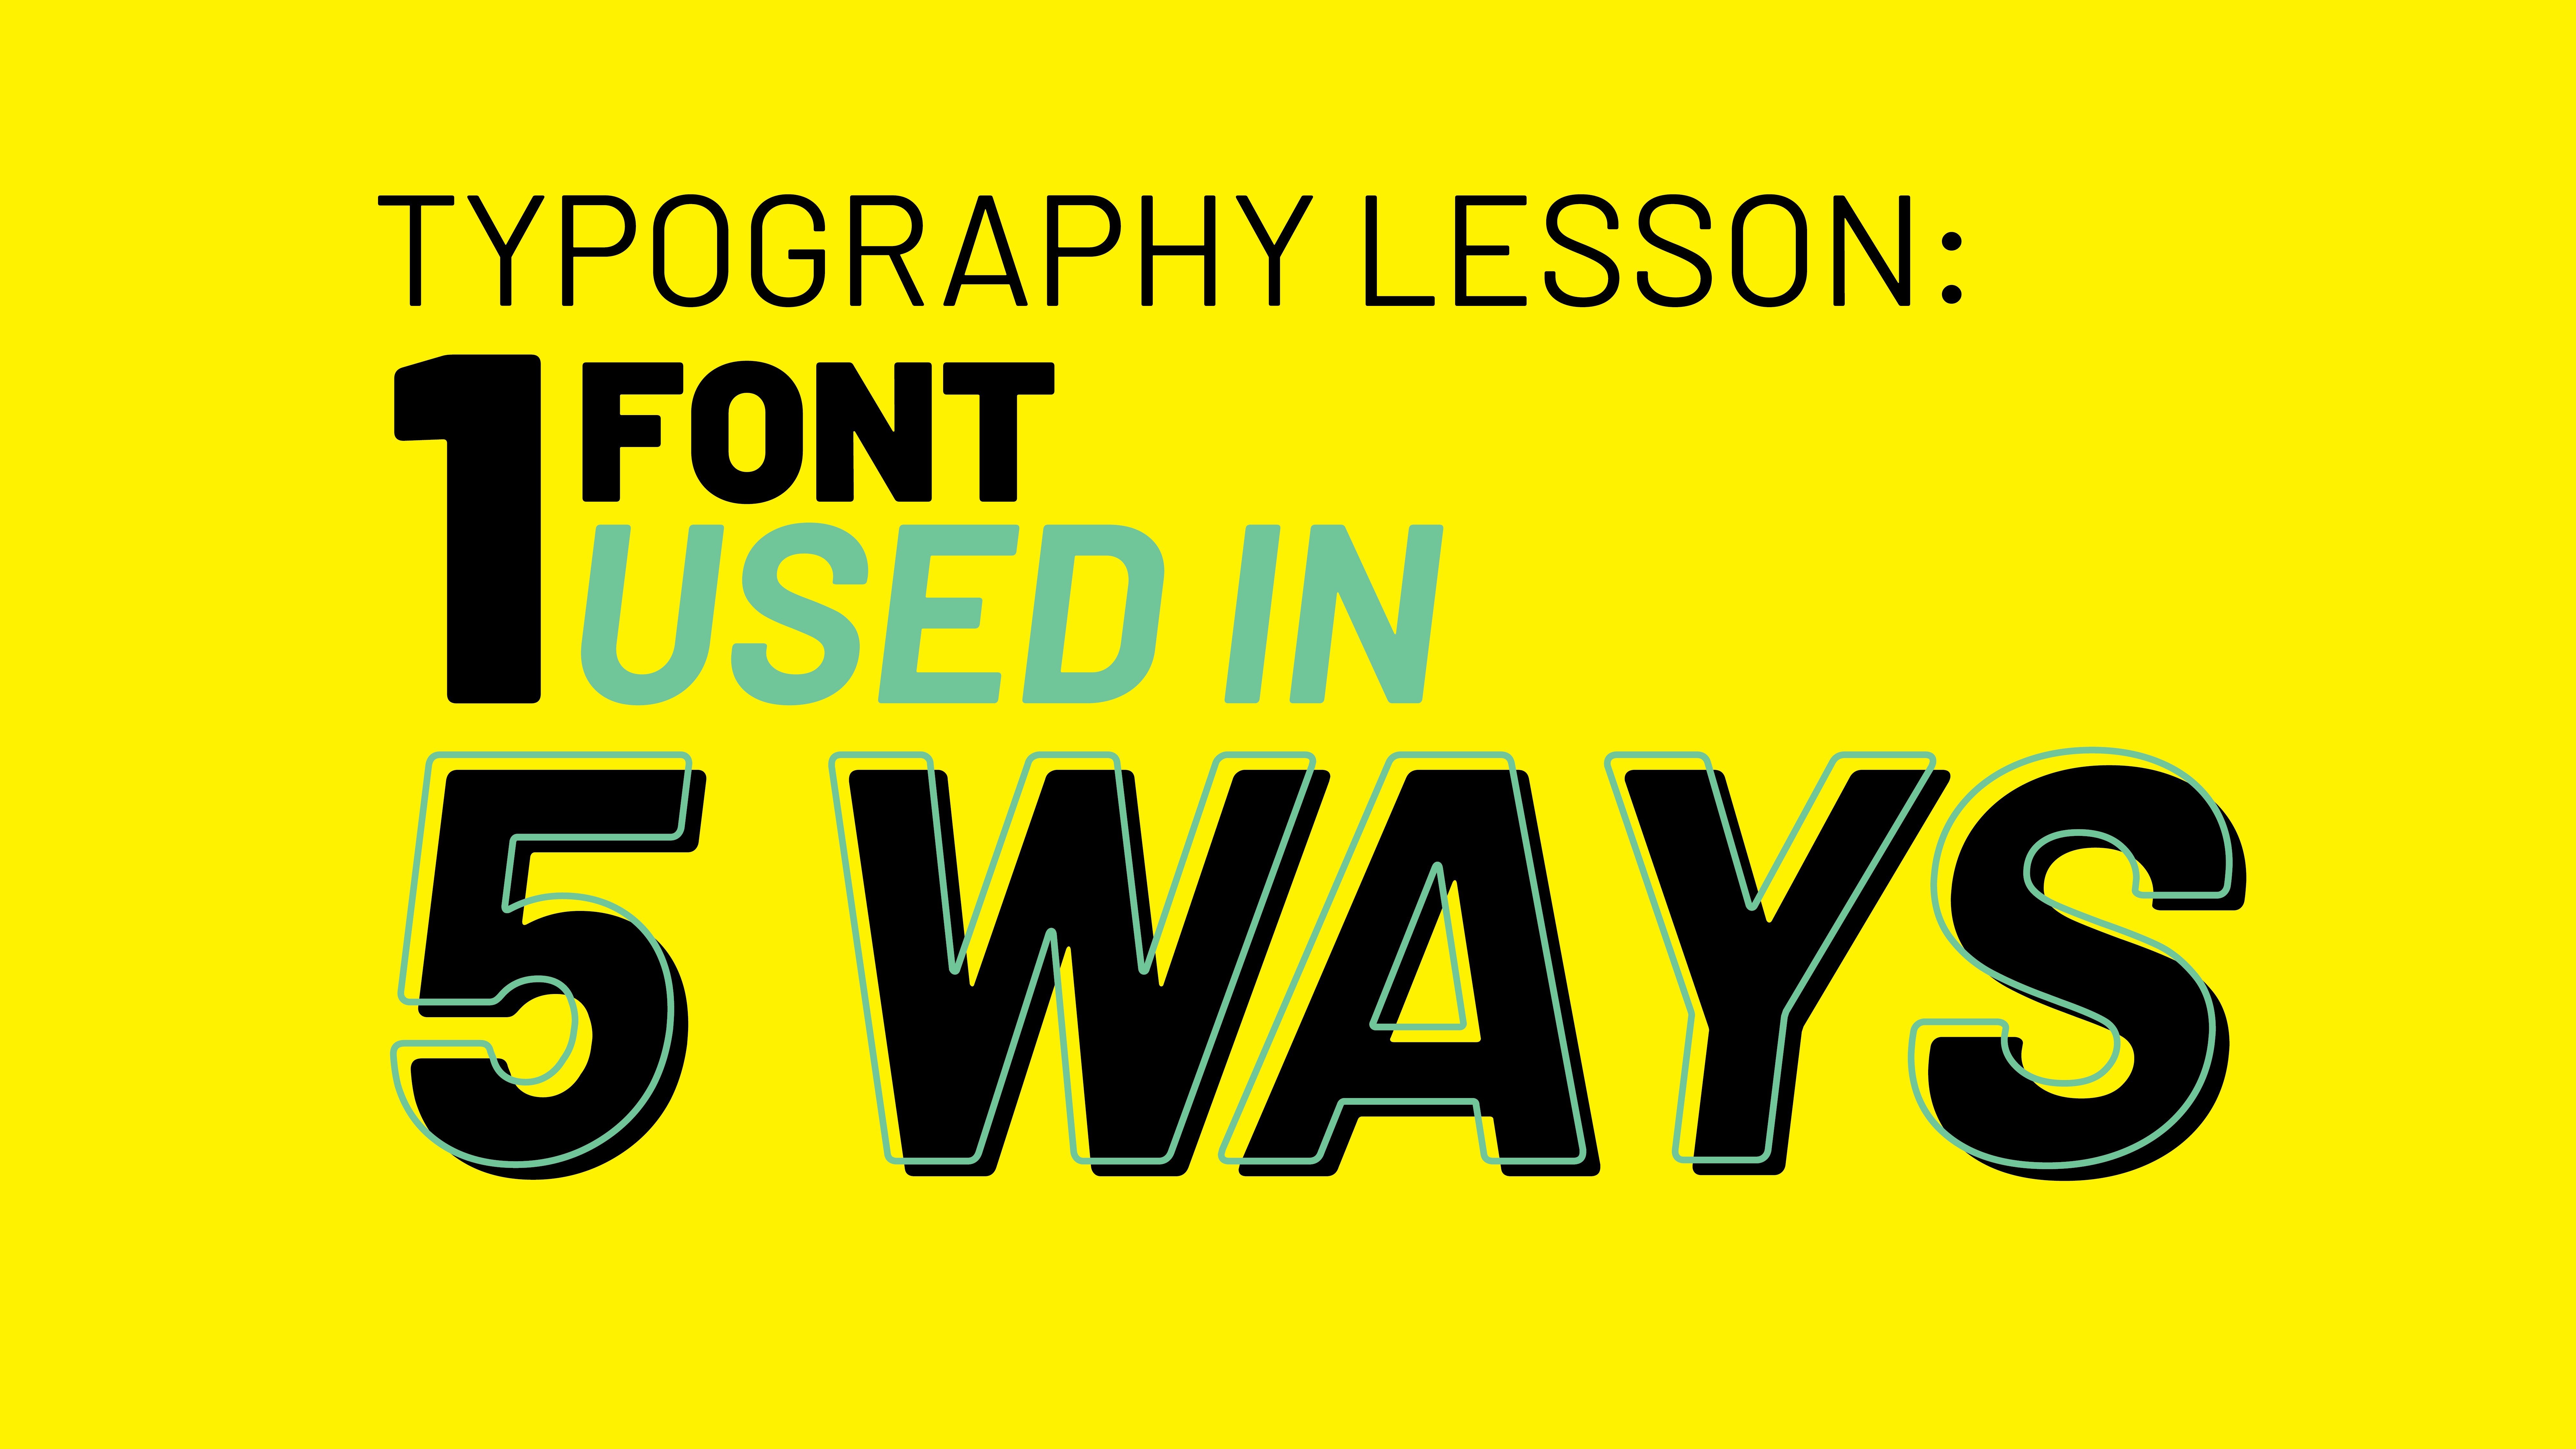 آموزش تایپوگرافی 101: یک فونت از پنج راه استفاده می شود